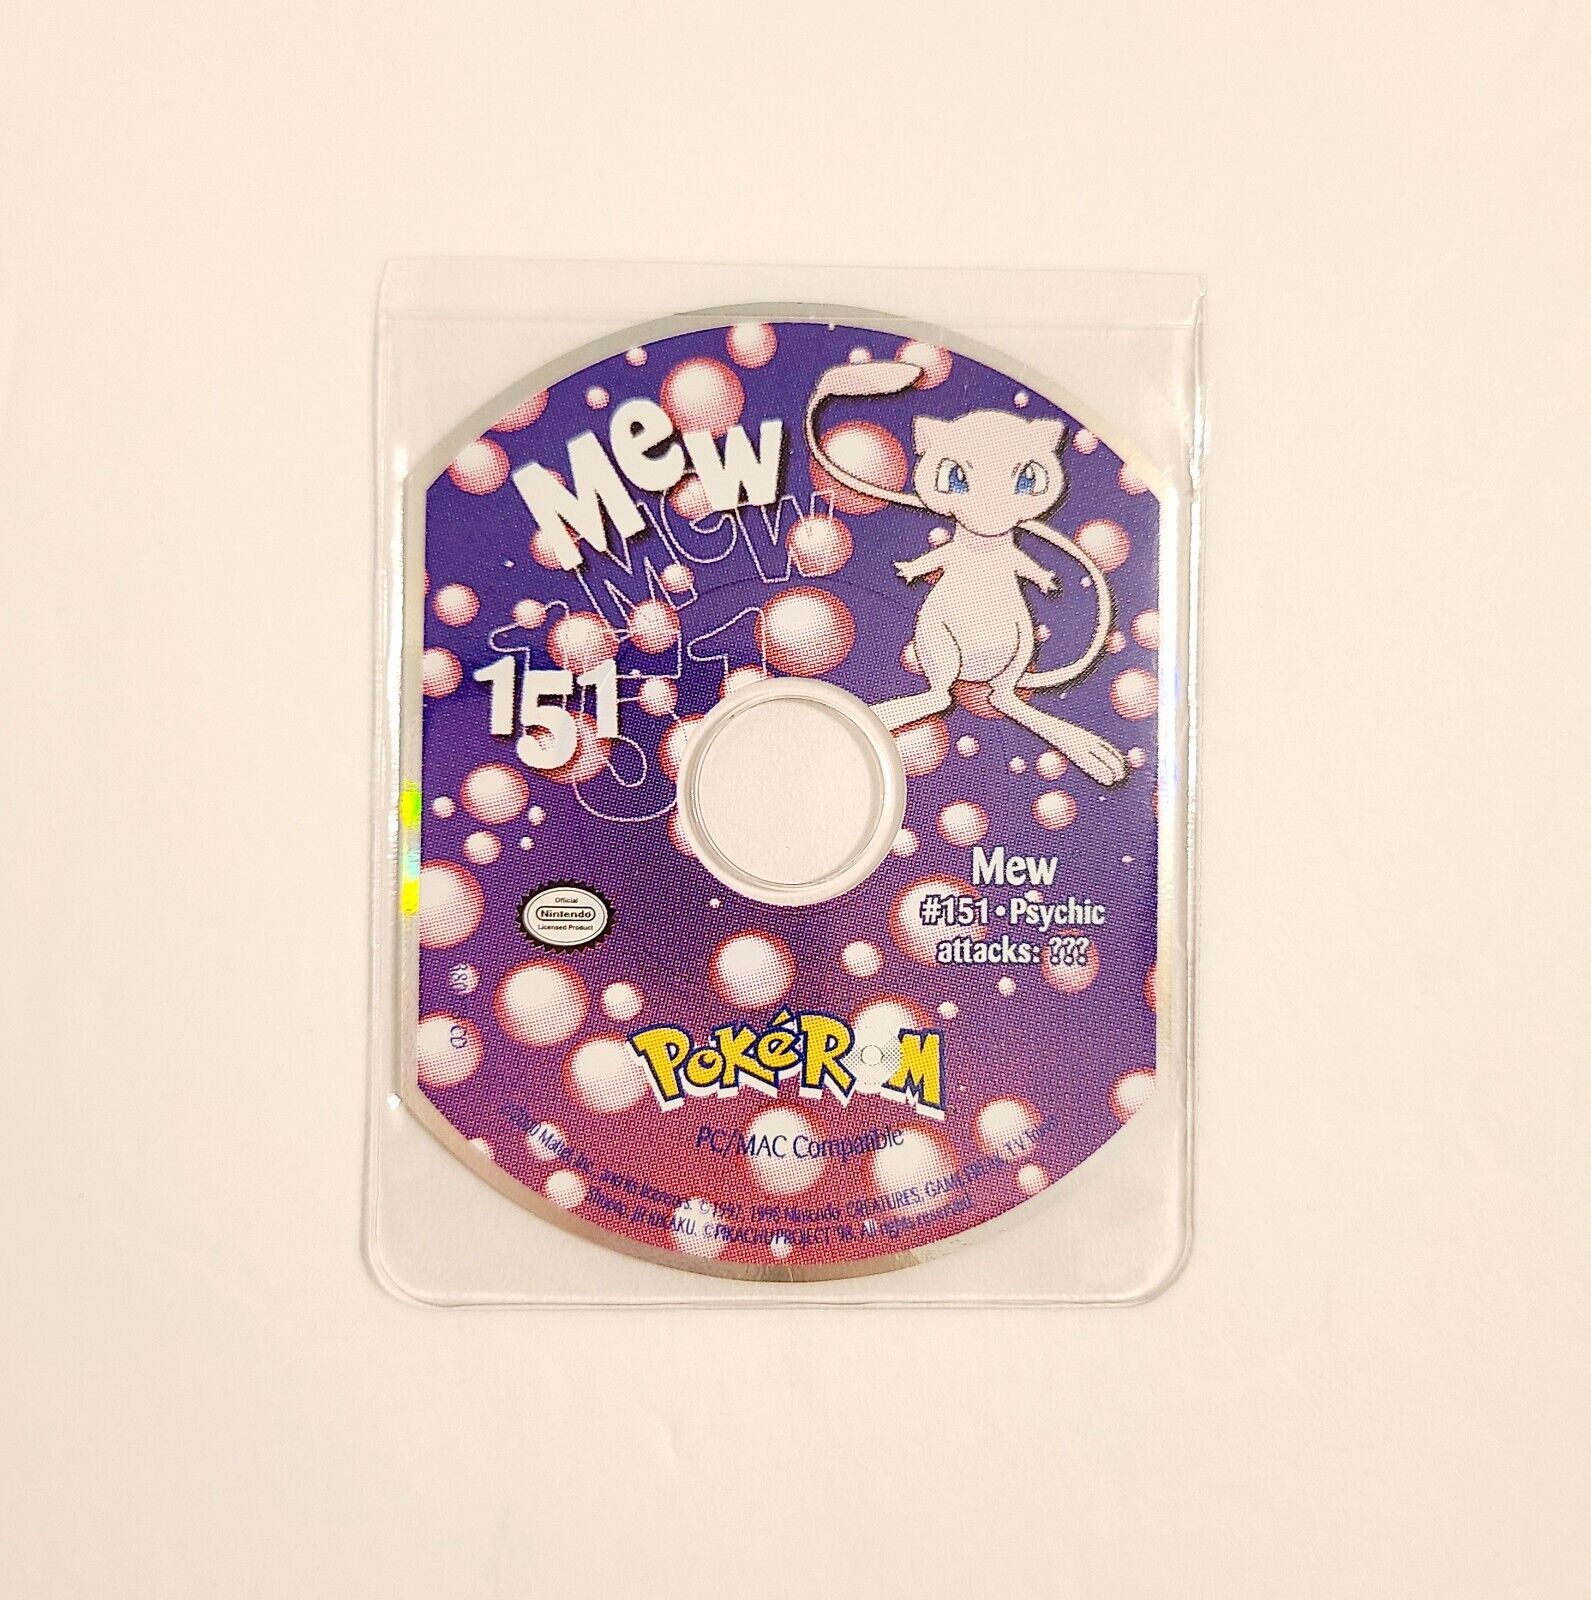 Pokémon MEW 151 Psychic Attacks PokéRom PC/MAC Compatible CD-ROM (2000) GREAT